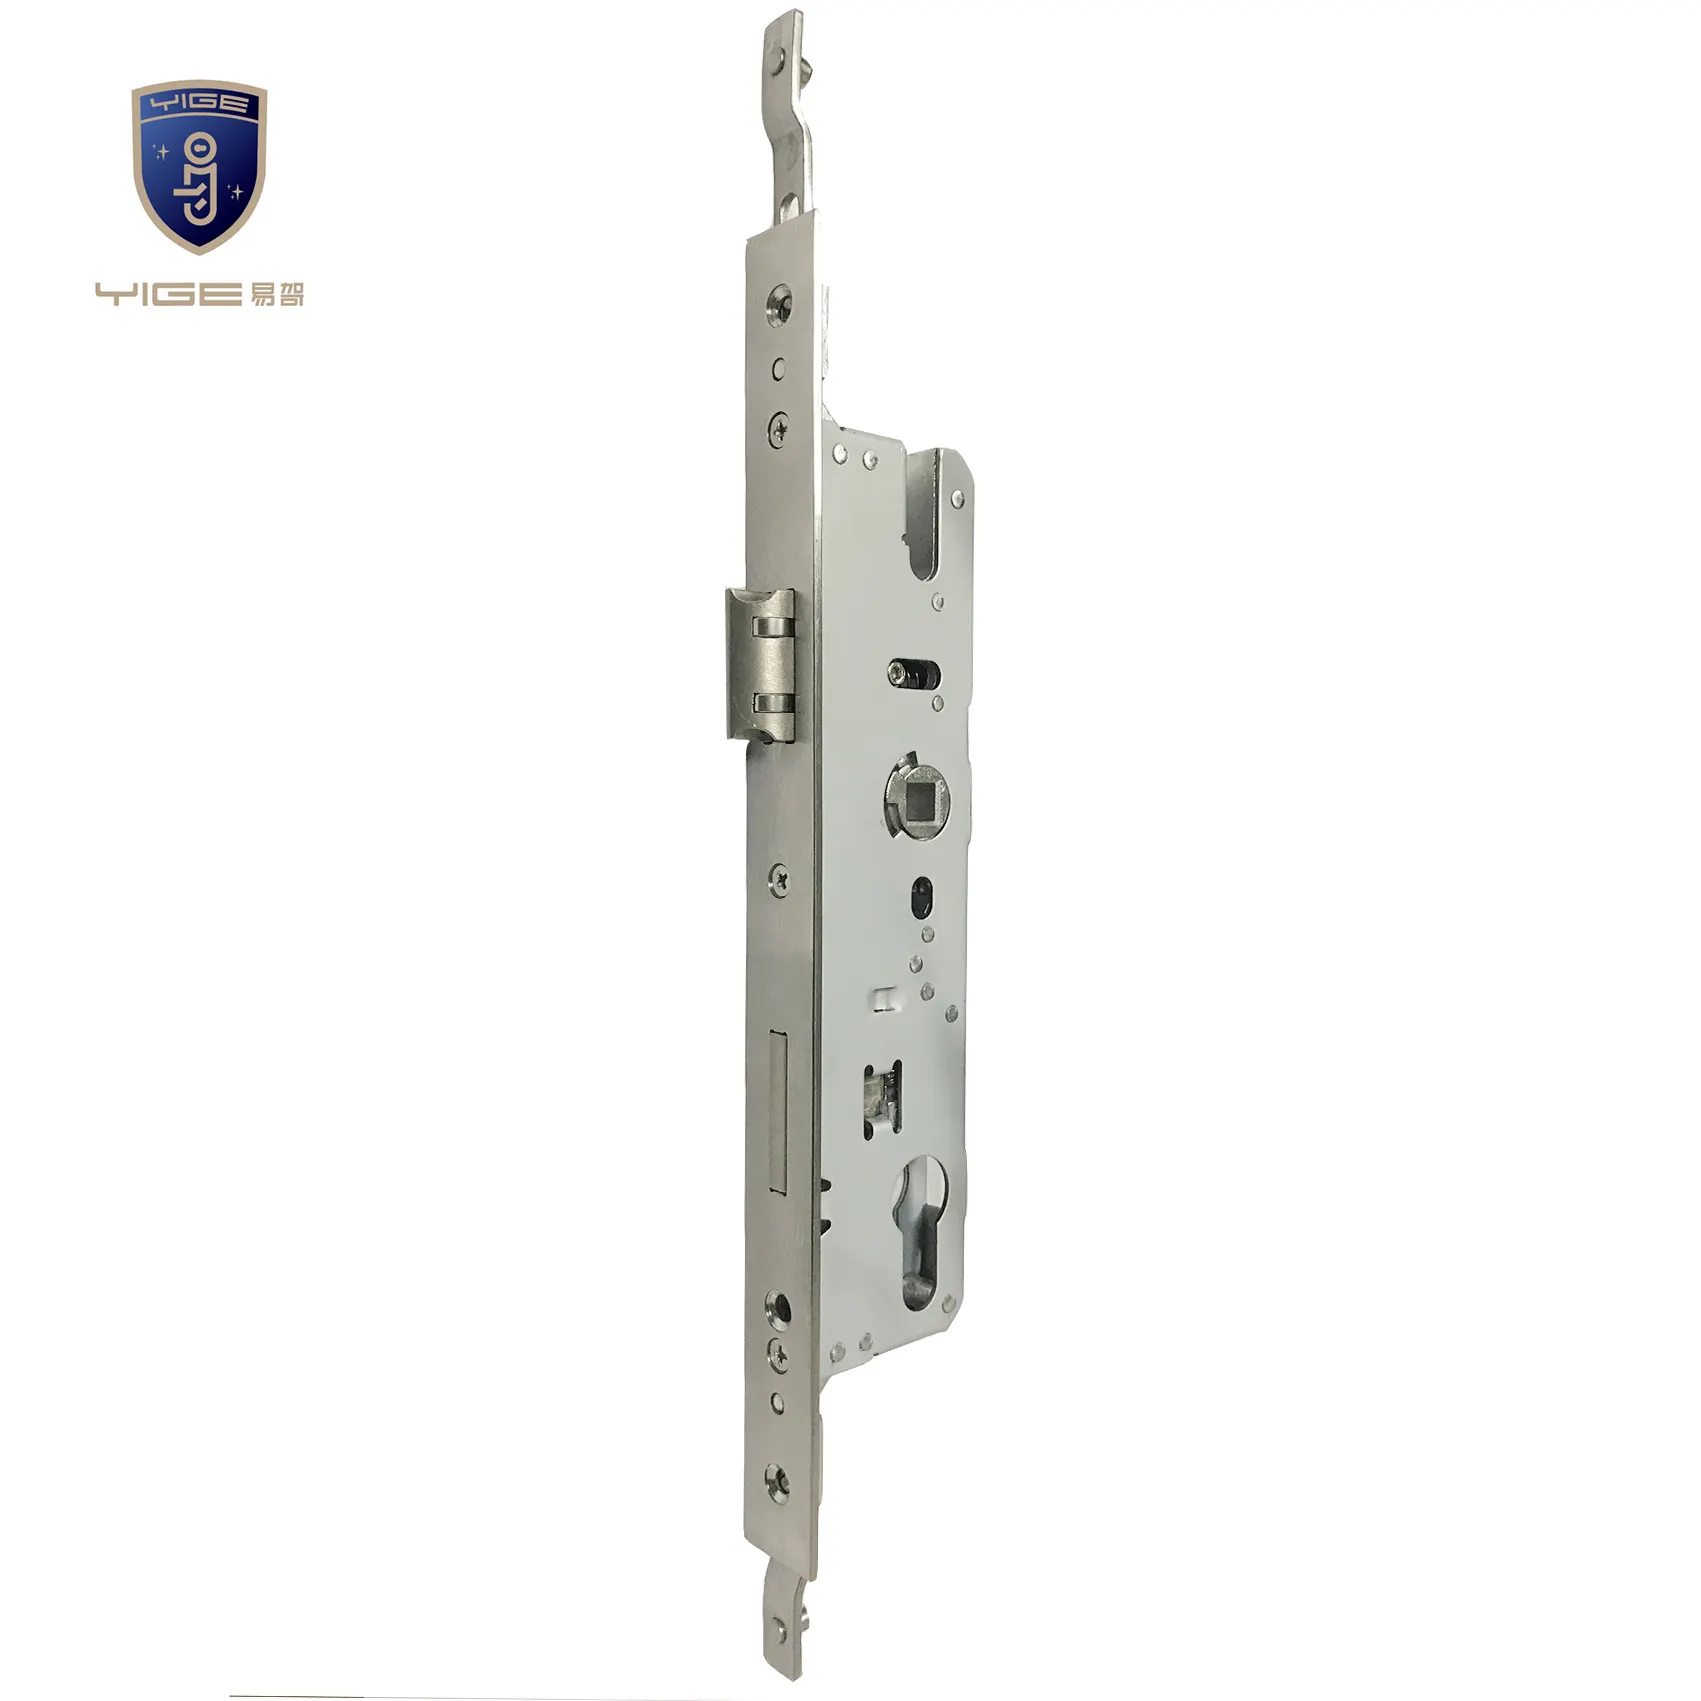 أمن وحماية-قفل باب, قفل باب 8534 مللي متر عالي الأمان للباب في المنازل مصنوع من سبائك الألومنيوم